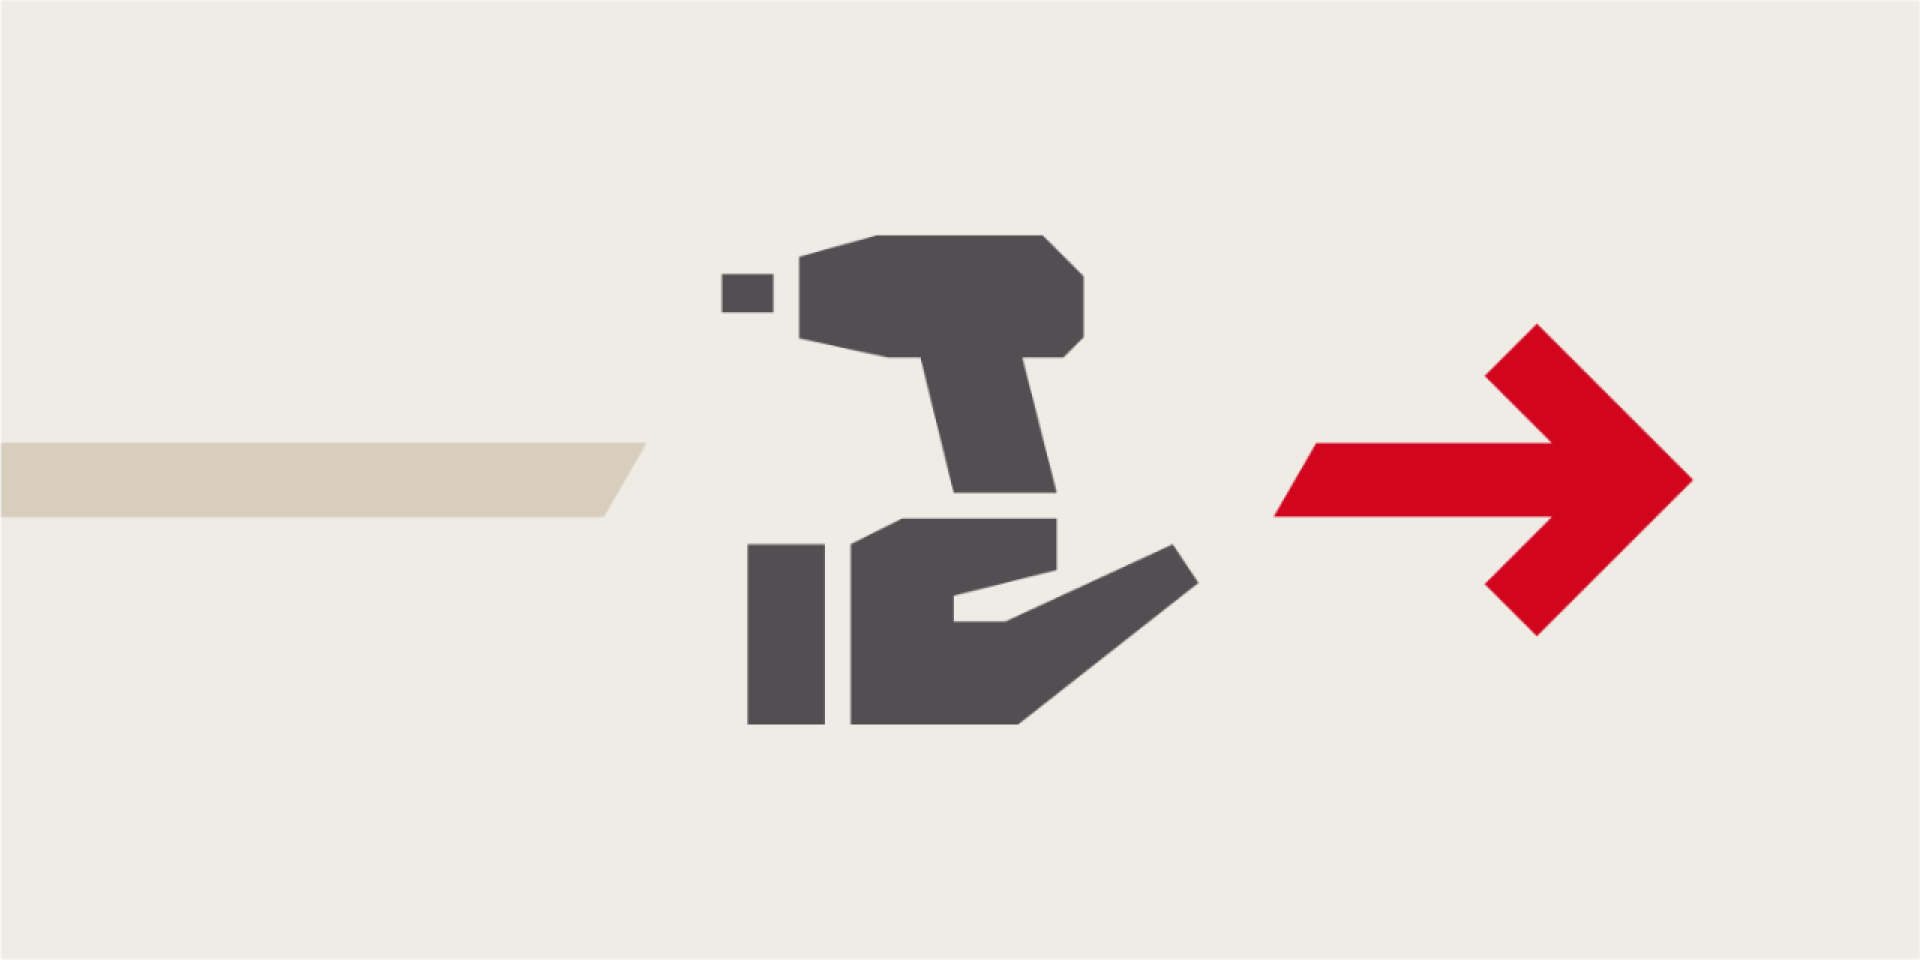 Eine graue Illustration, die einen stilisierten Akkuschrauber auf einer Hand zeigt, rechts daneben ein roter Pfeil der nach rechts weist.